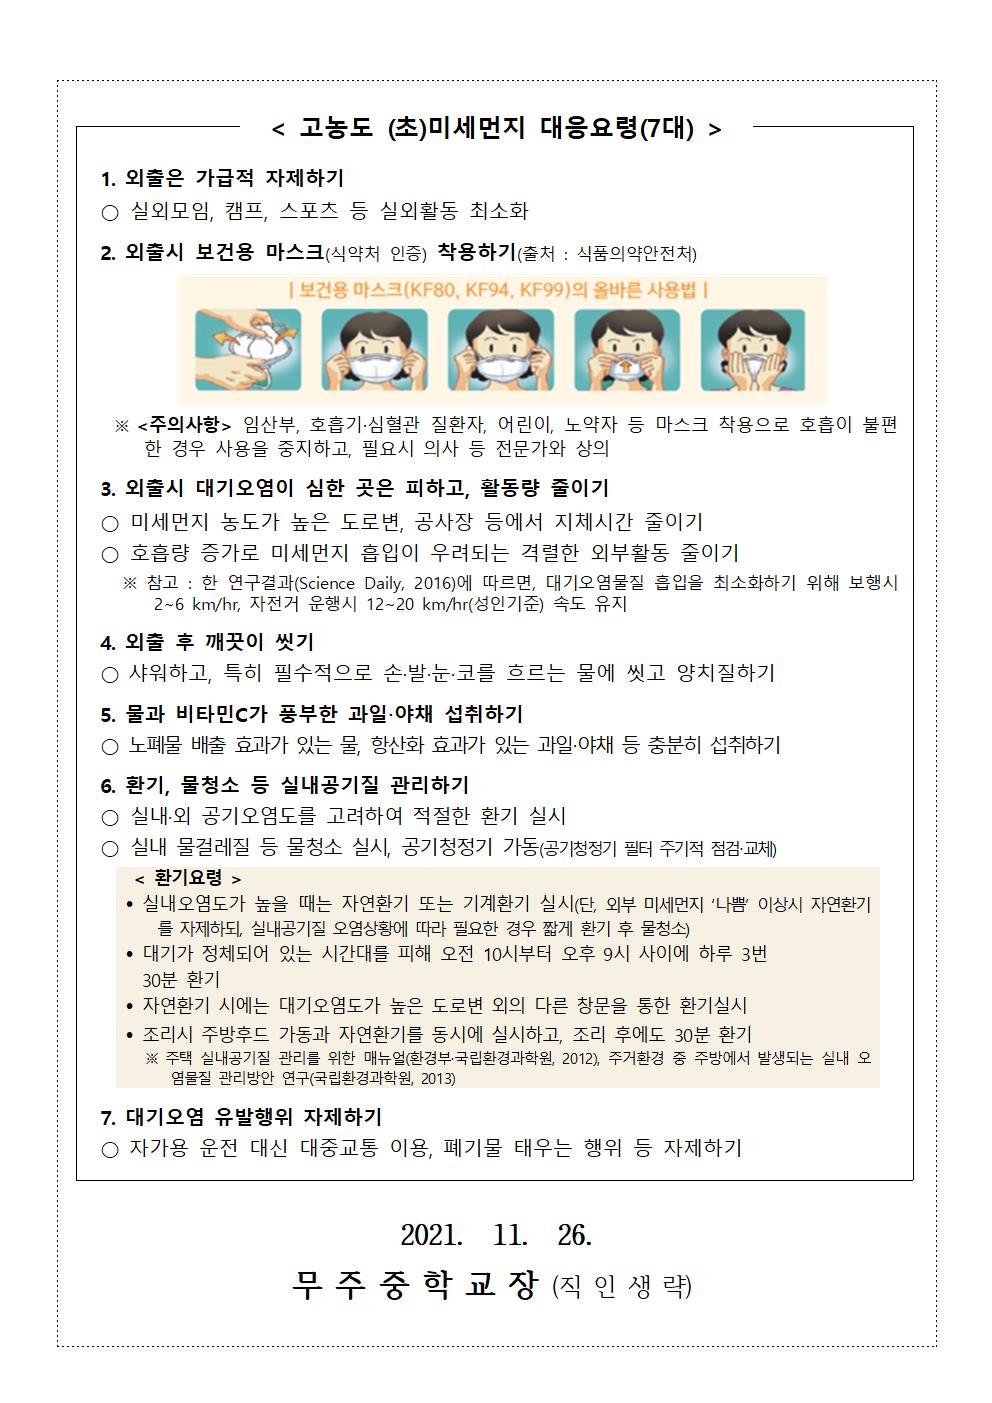 미세먼지 대응요령 계기교육 가정통신문002